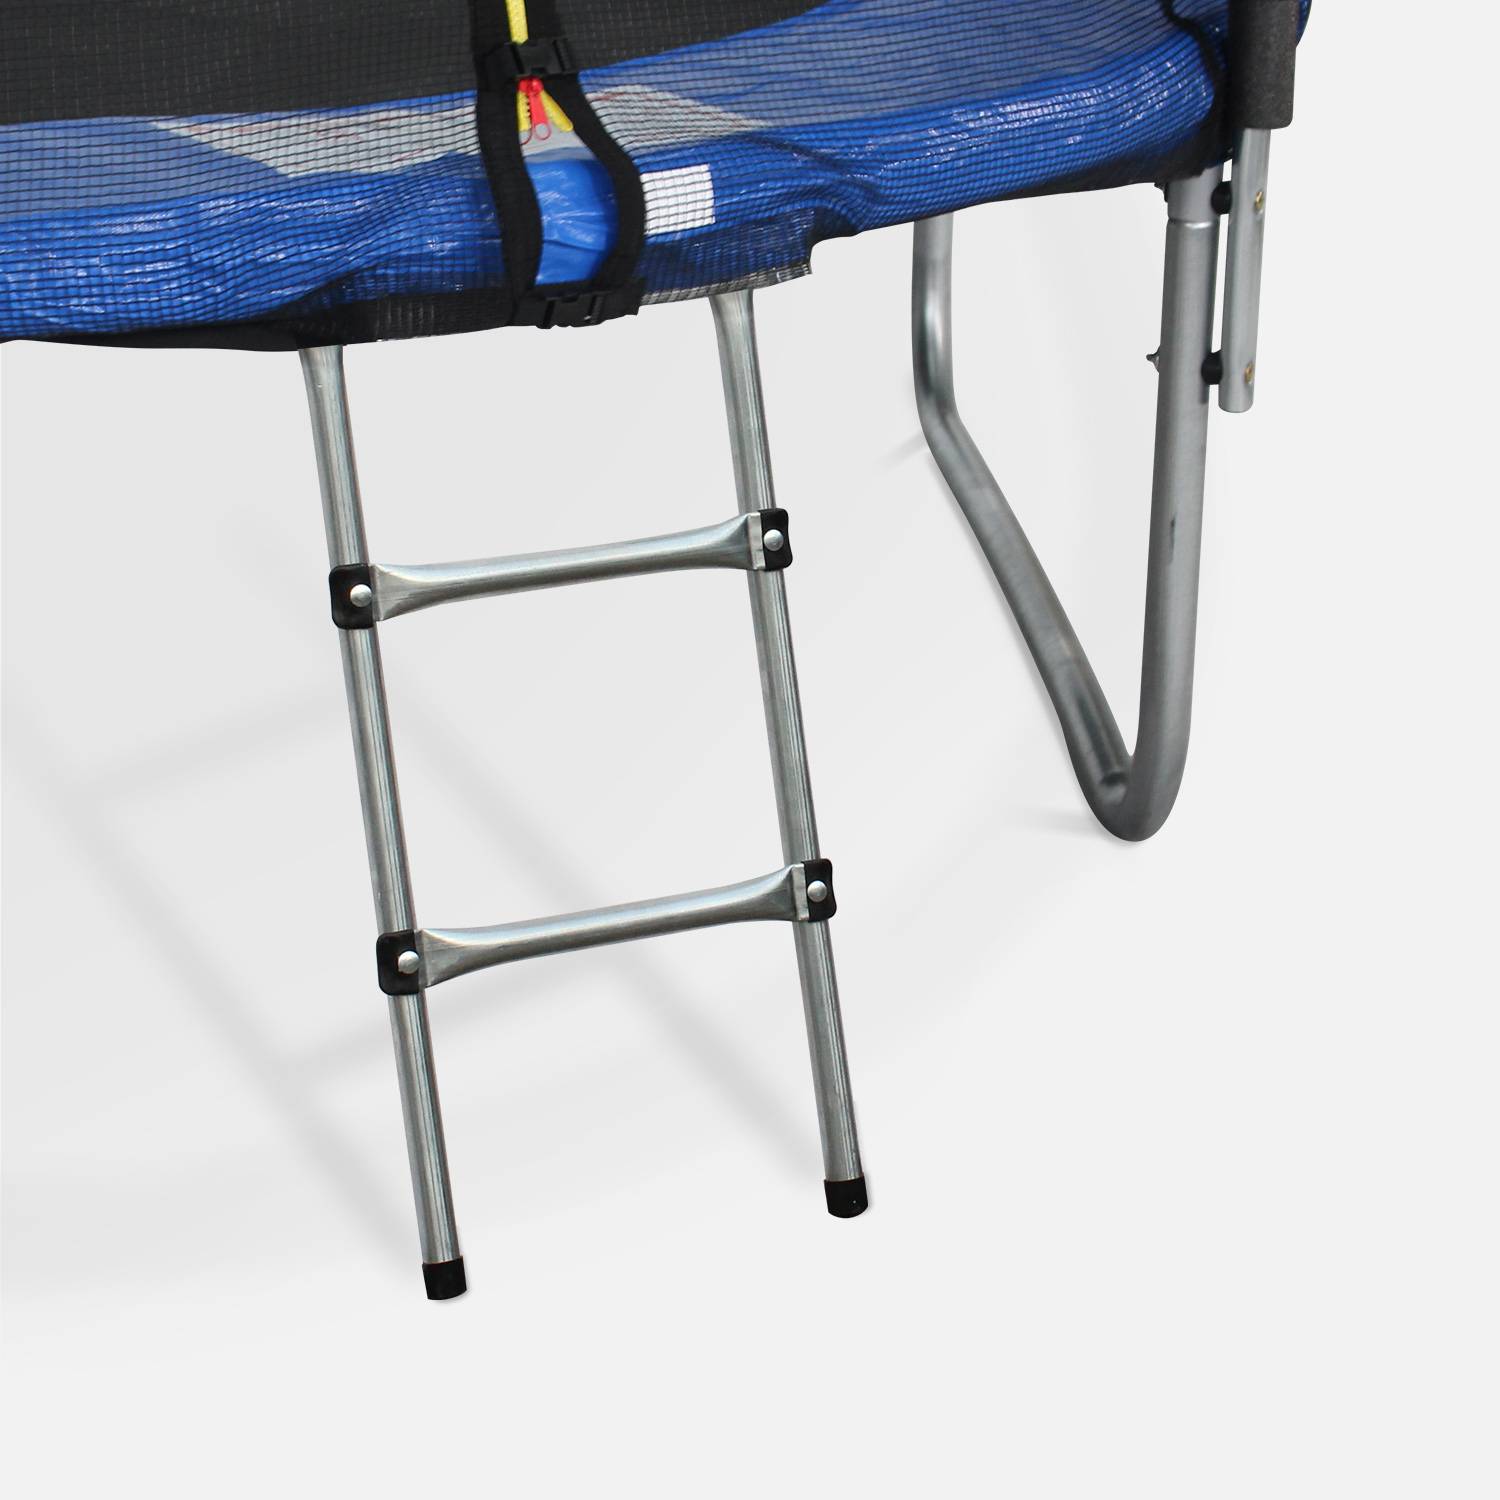 Pakket met accessoires voor trampoline Ø400cm Mercure met een ladder, een beschermhoes, een opbergnet voor schoenen en een verankeringskit Photo2